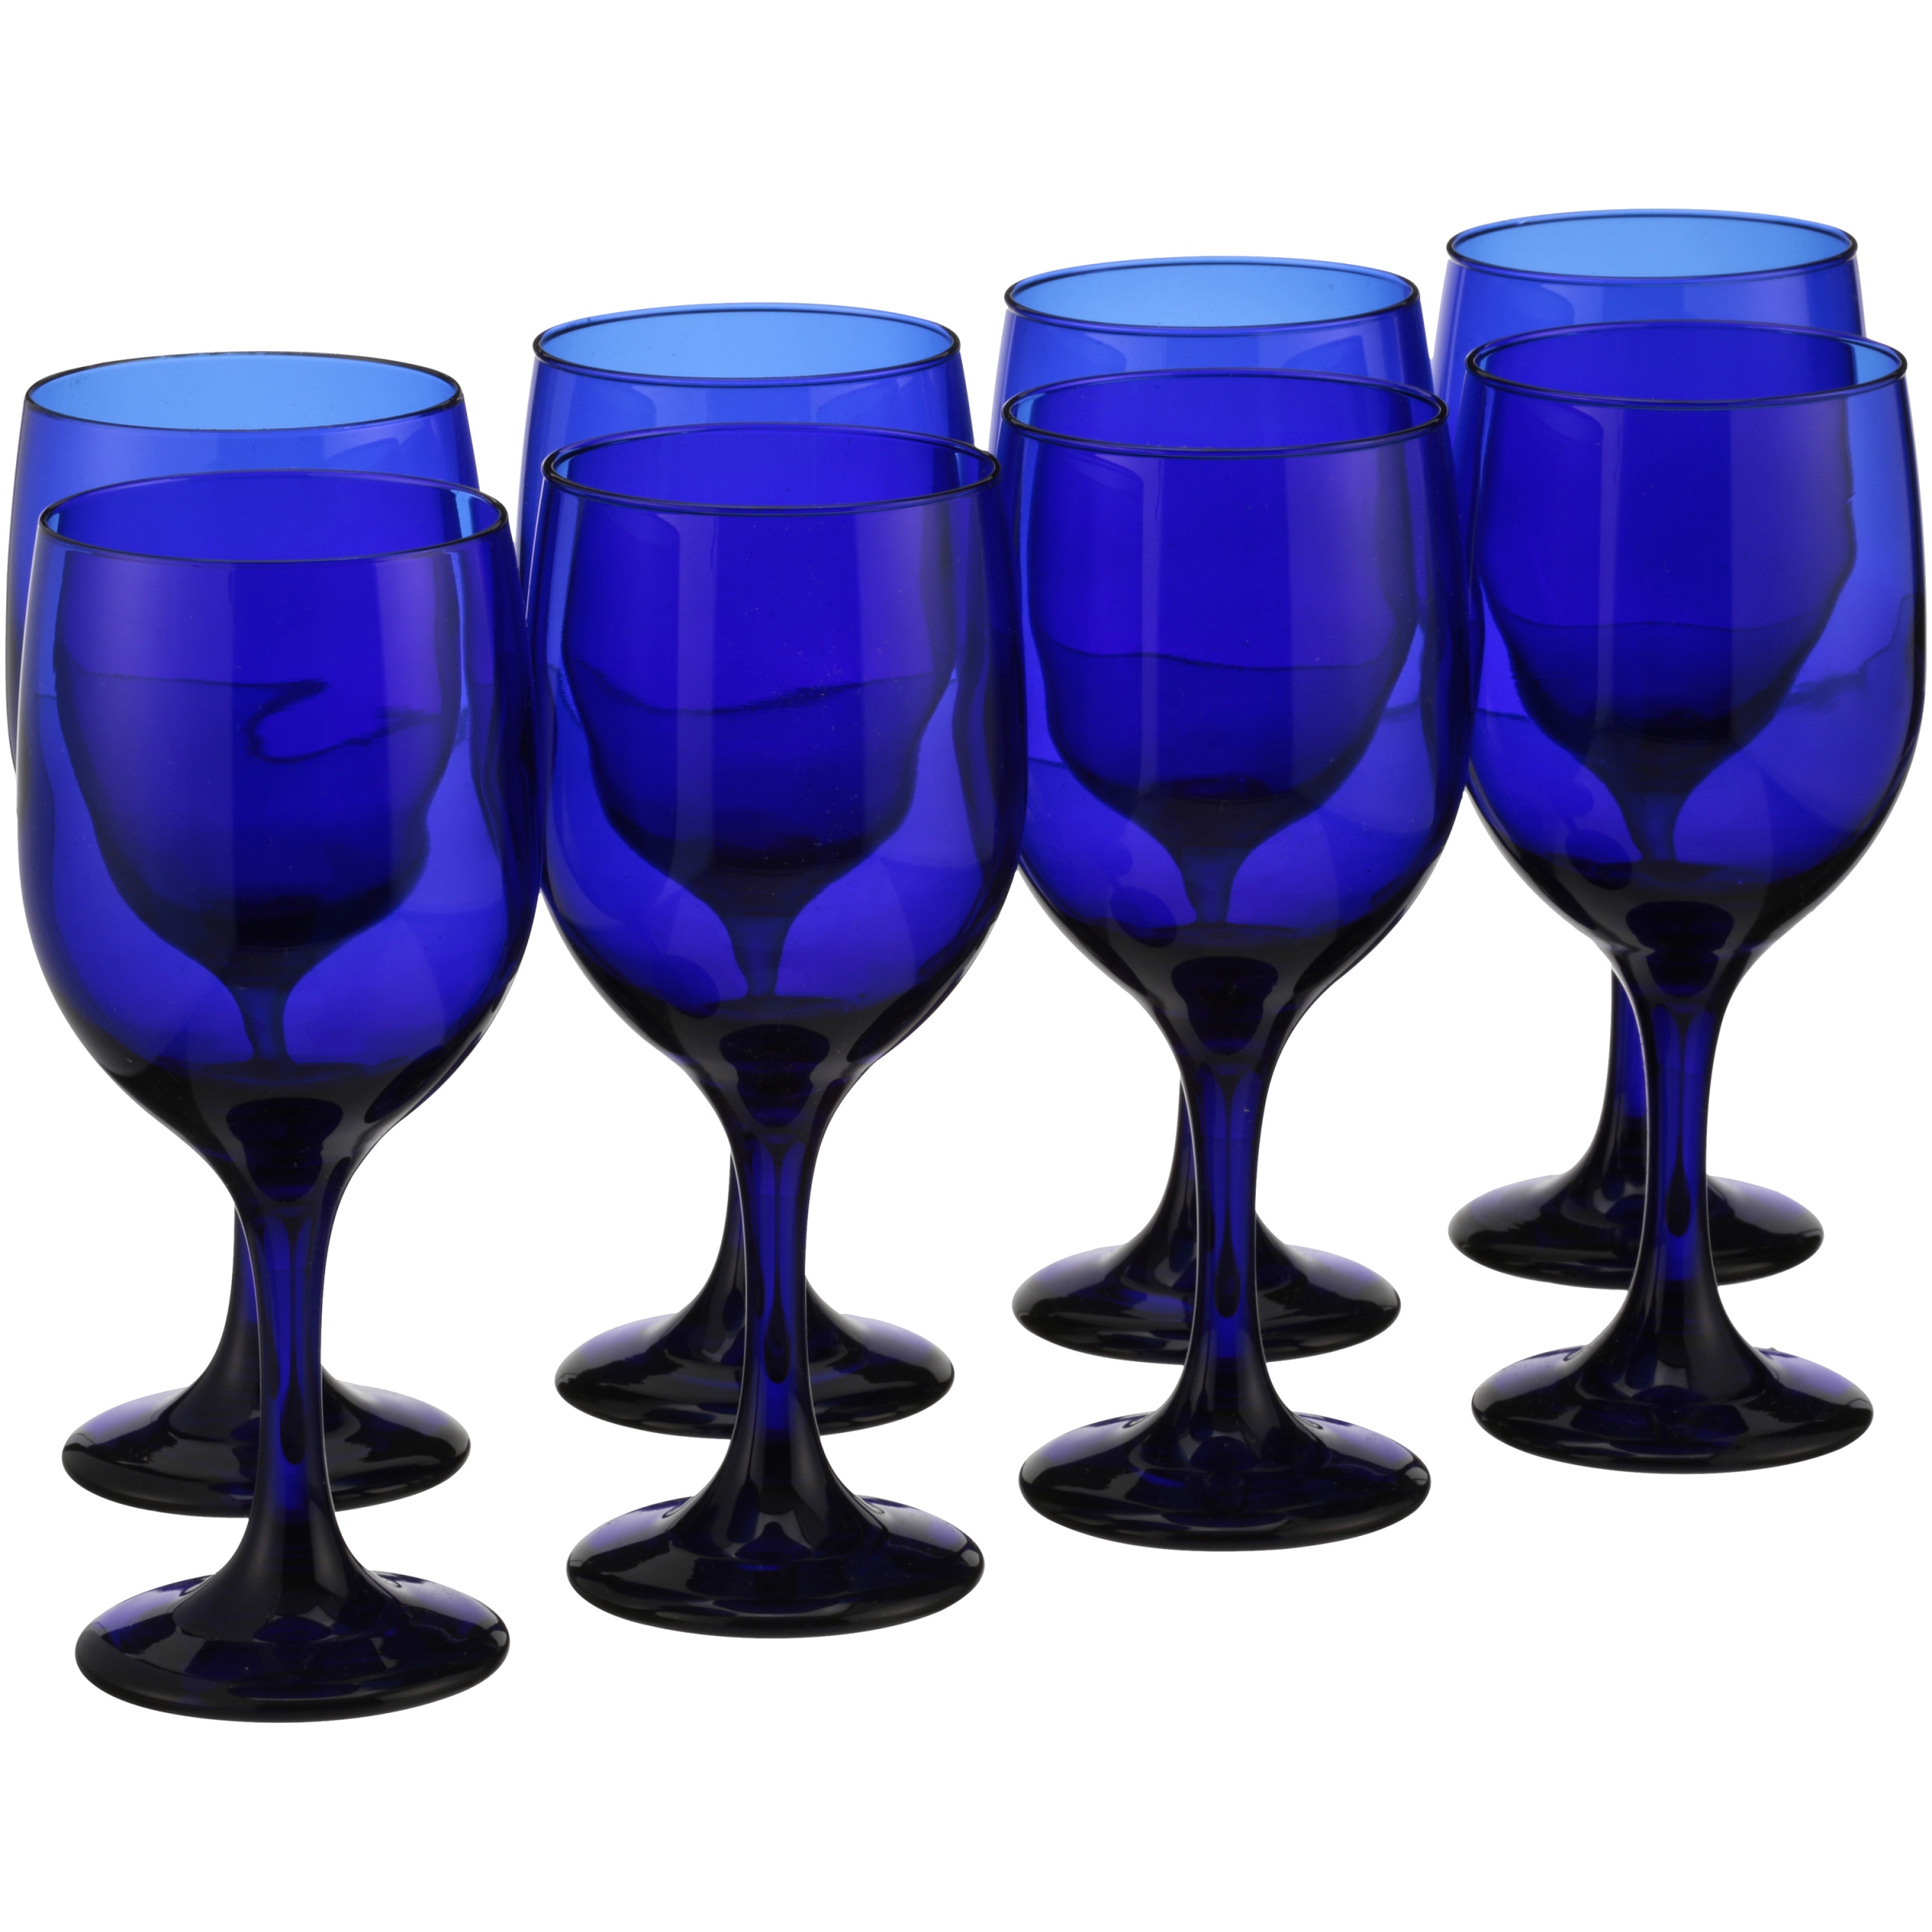 Libbey Cobalt Blue Goblets 8 pieces Box - image 1 of 3